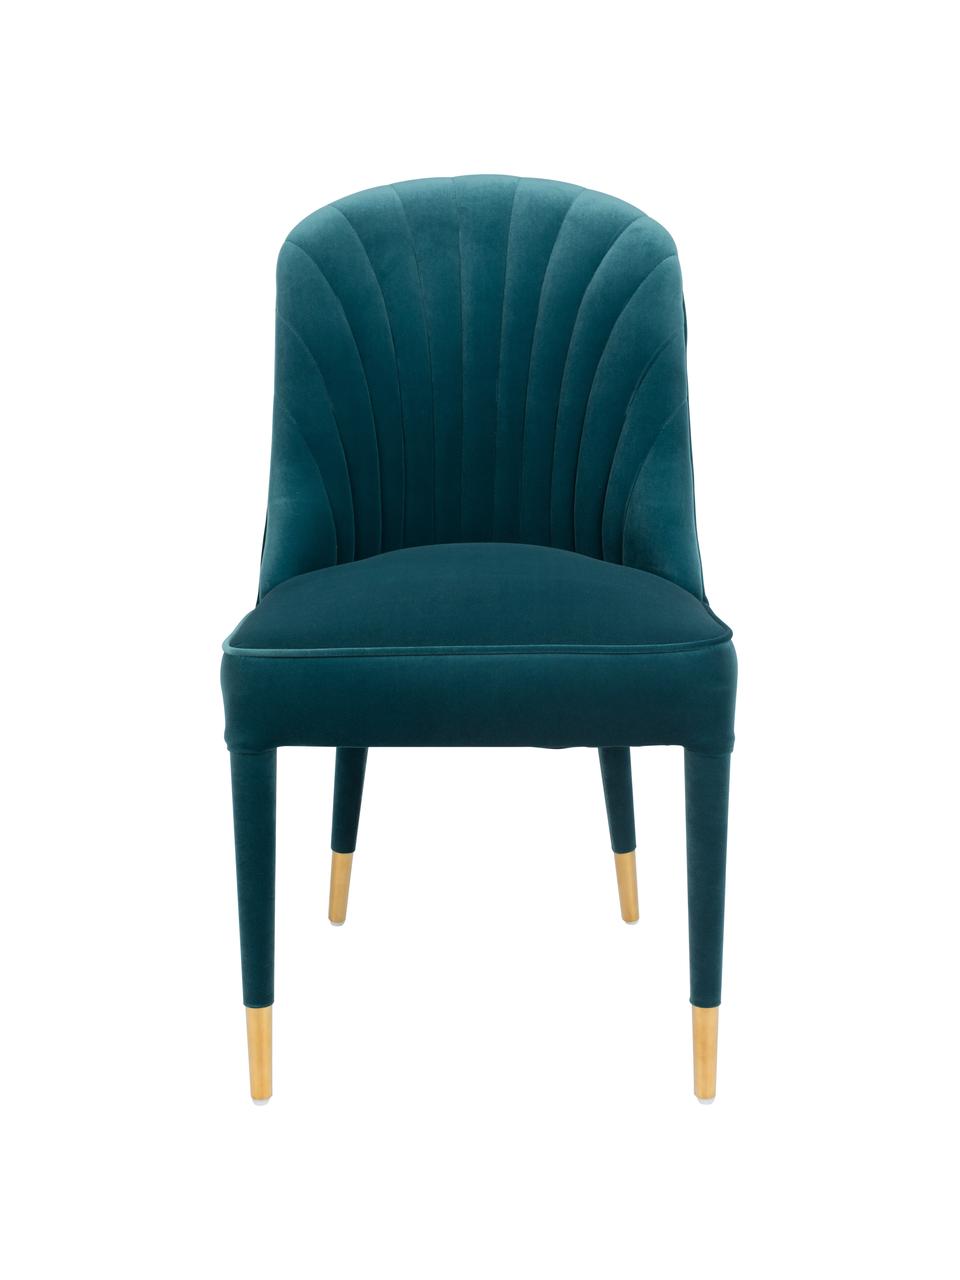 Krzesło z aksamitu Give Me More, Tapicerka: 100% aksamit poliestrowy , Stelaż: drewno warstwowe, Nogi: drewno kauczukowe, Niebieski, odcienie mosiądzu, S 51 x G 61 cm